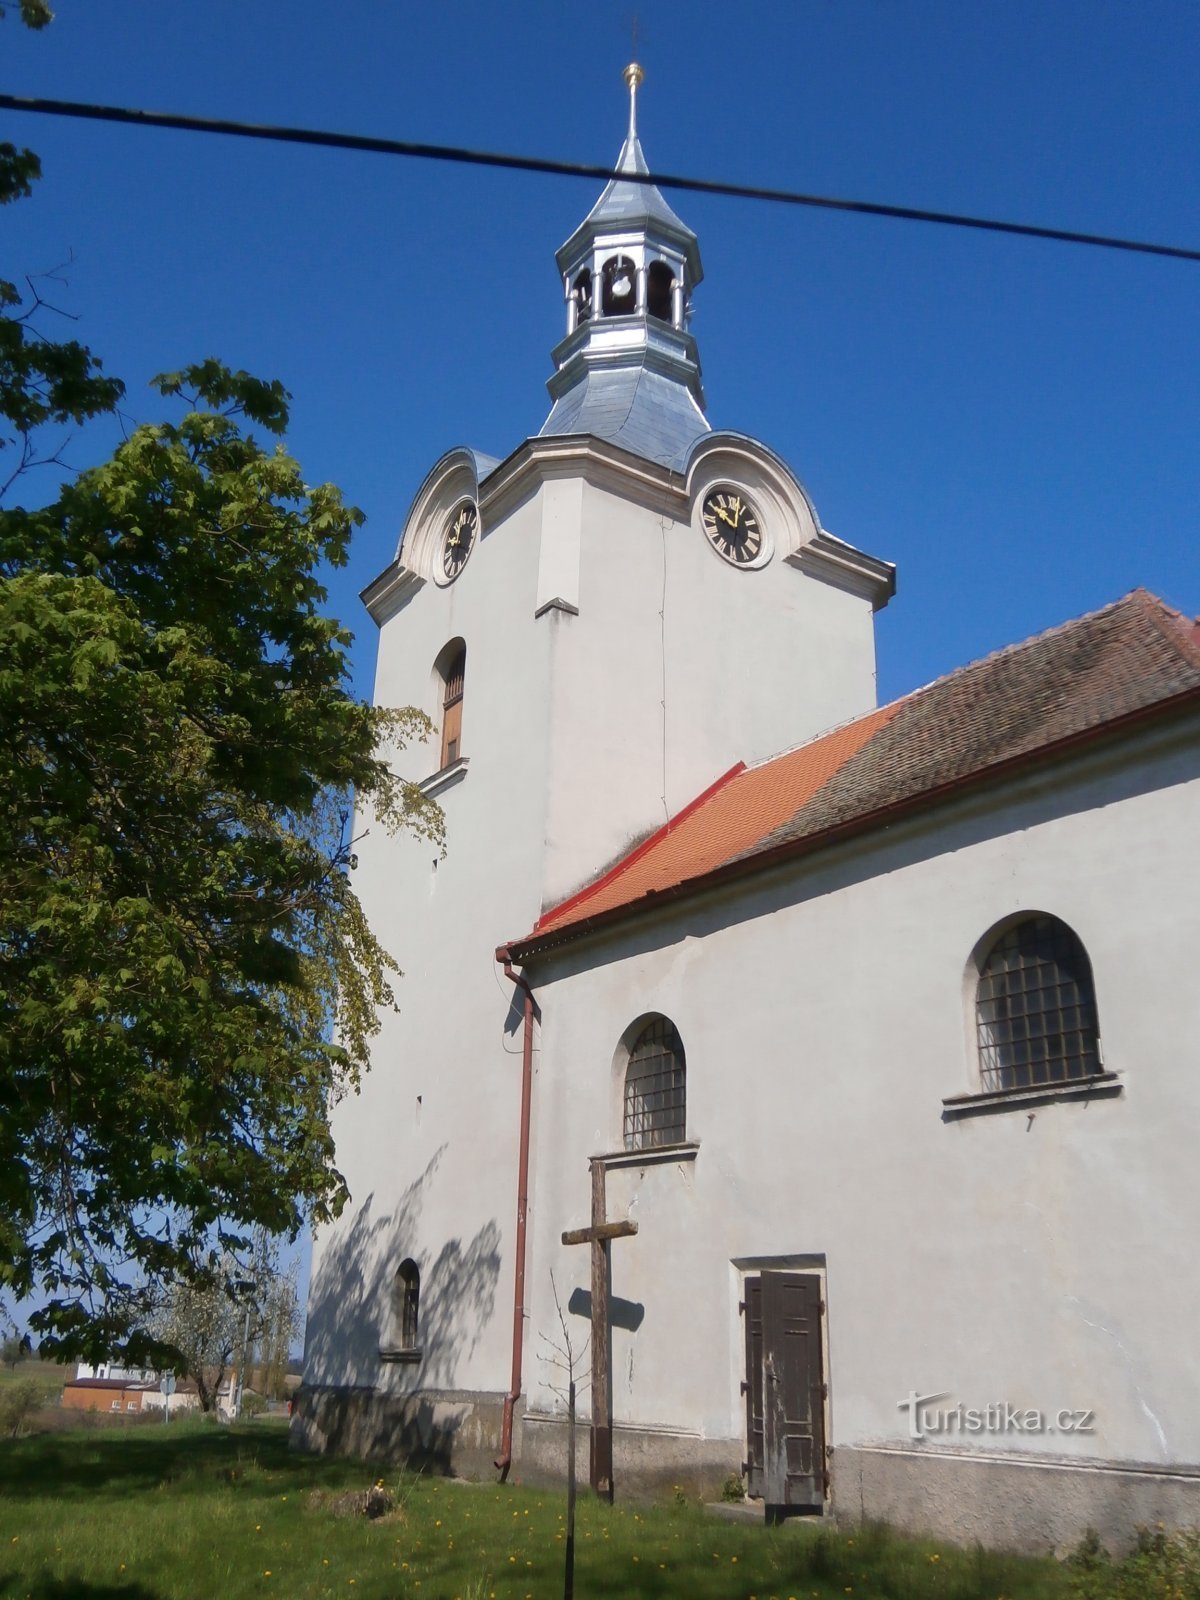 圣教堂瓦茨拉夫 (Číbuz)